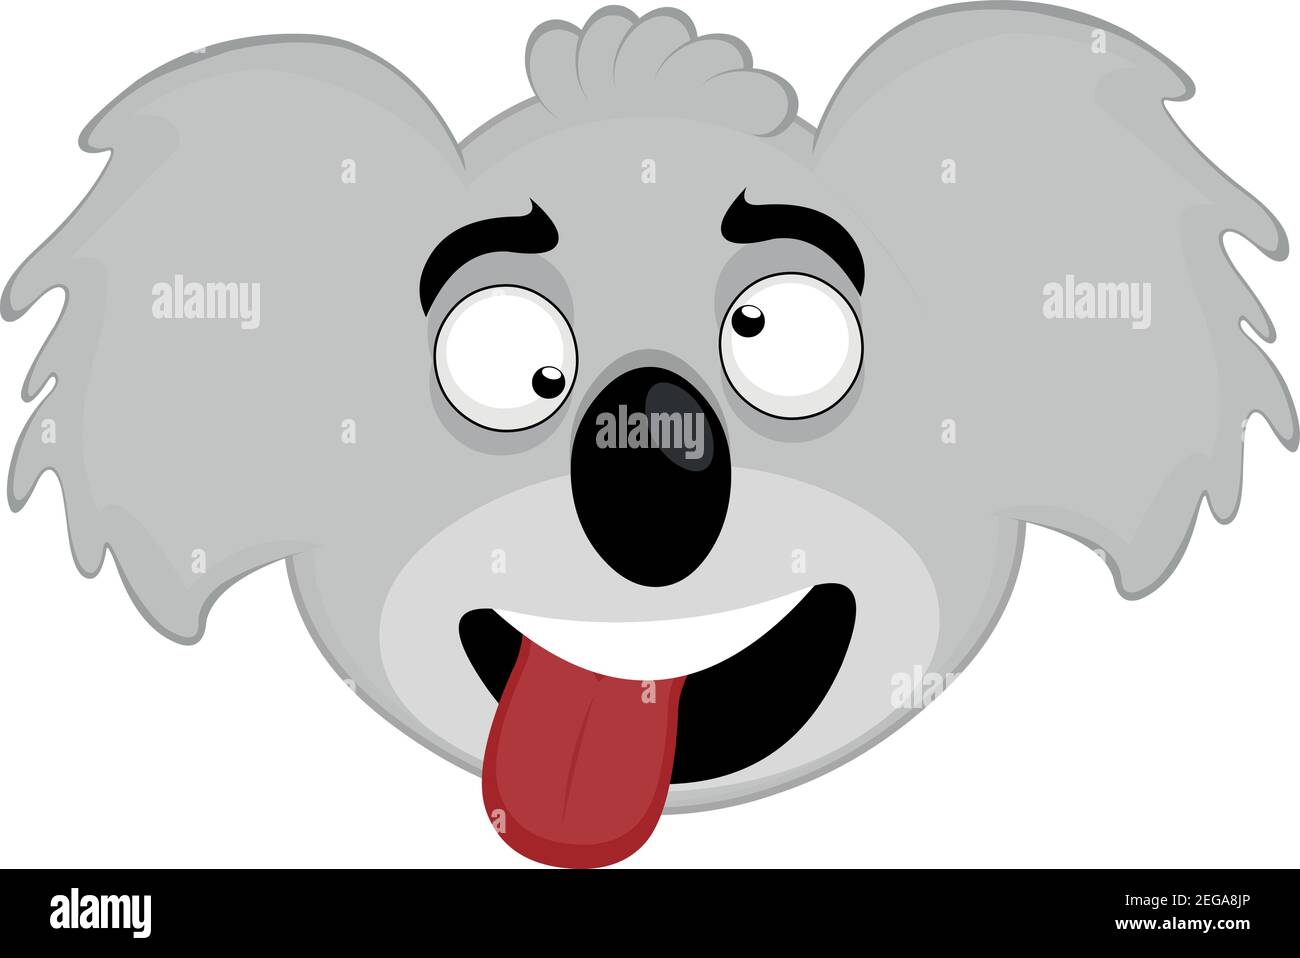 Illustration d'émoticône vectoriel de la tête d'un koala avec une expression moqueuse avec des yeux sauvages et en collant sa langue avec une bouche ouverte Illustration de Vecteur